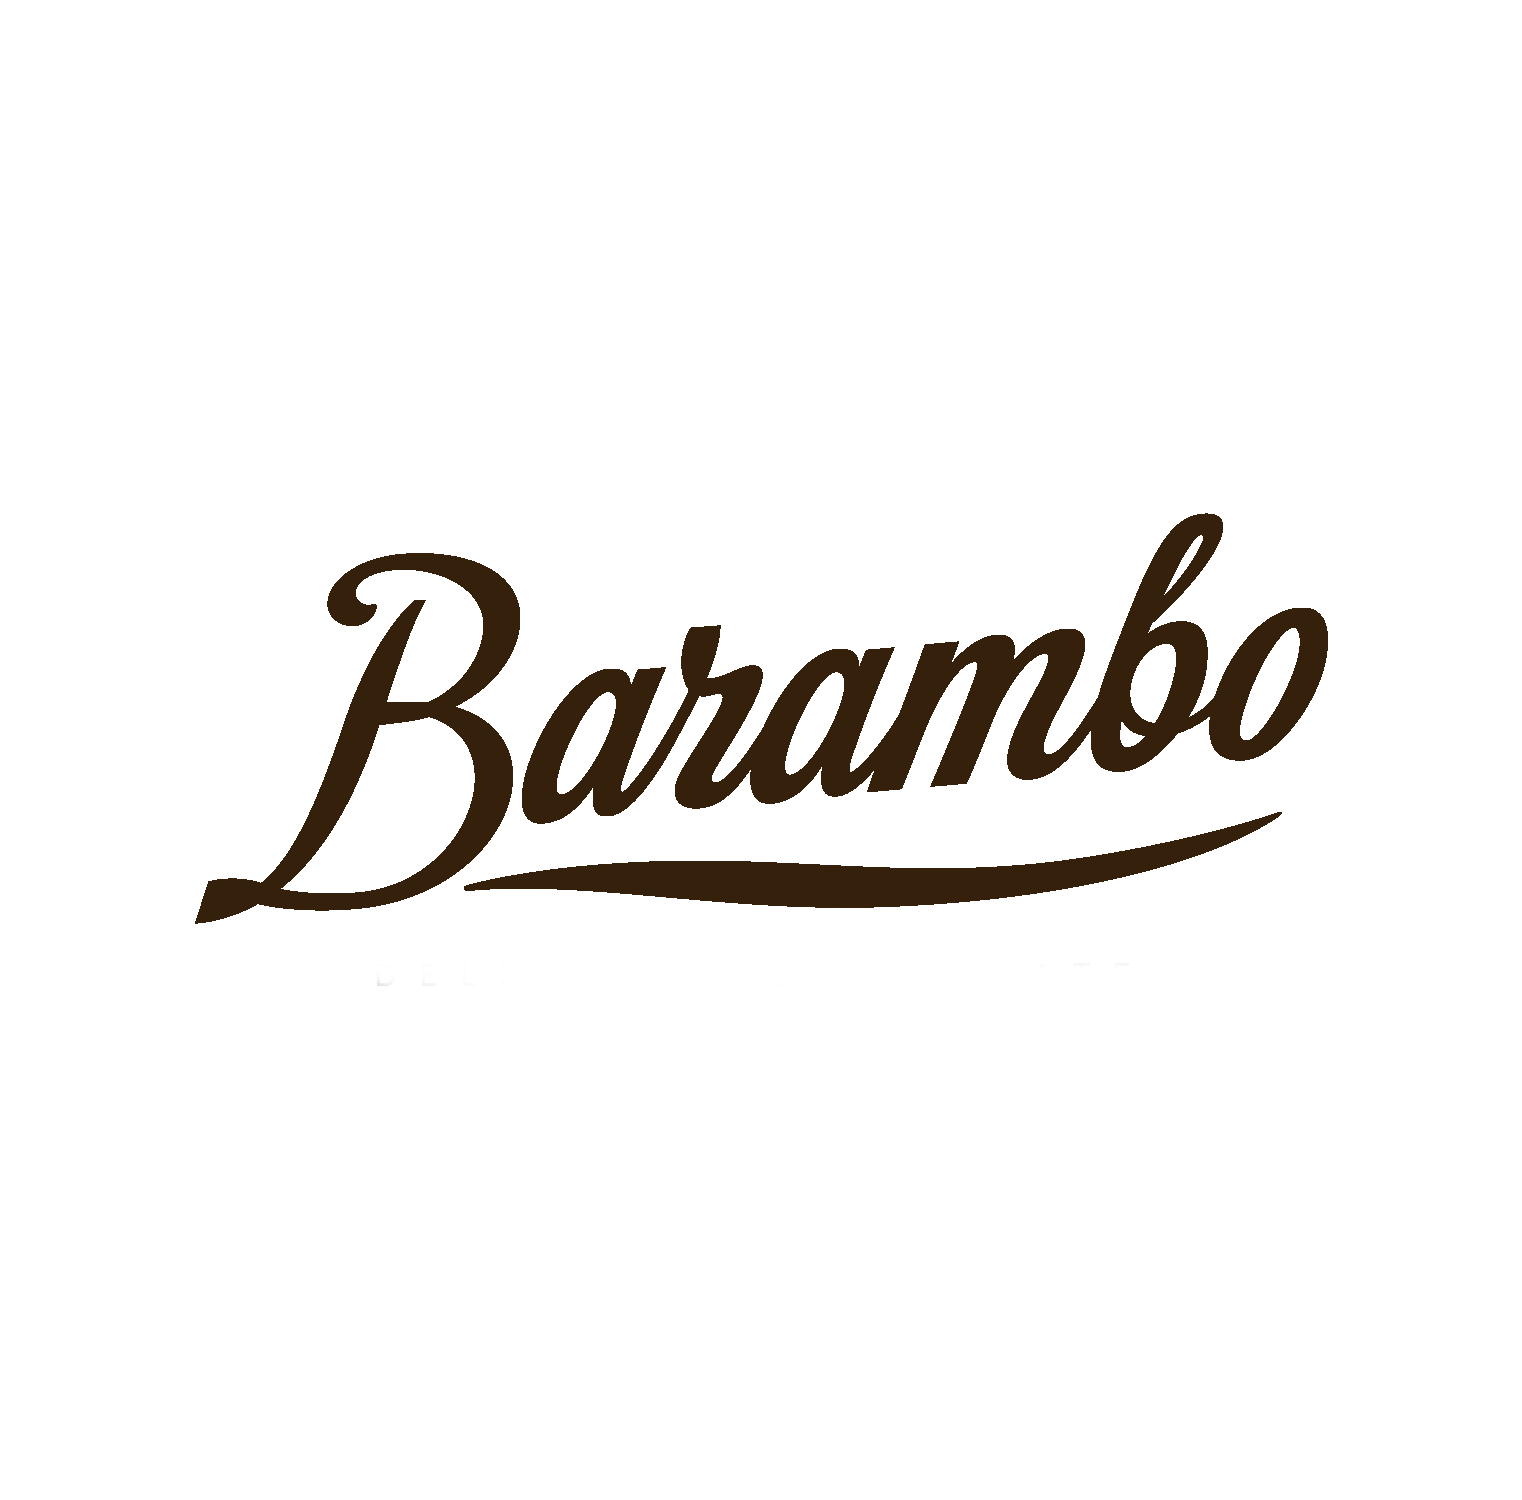 barambo